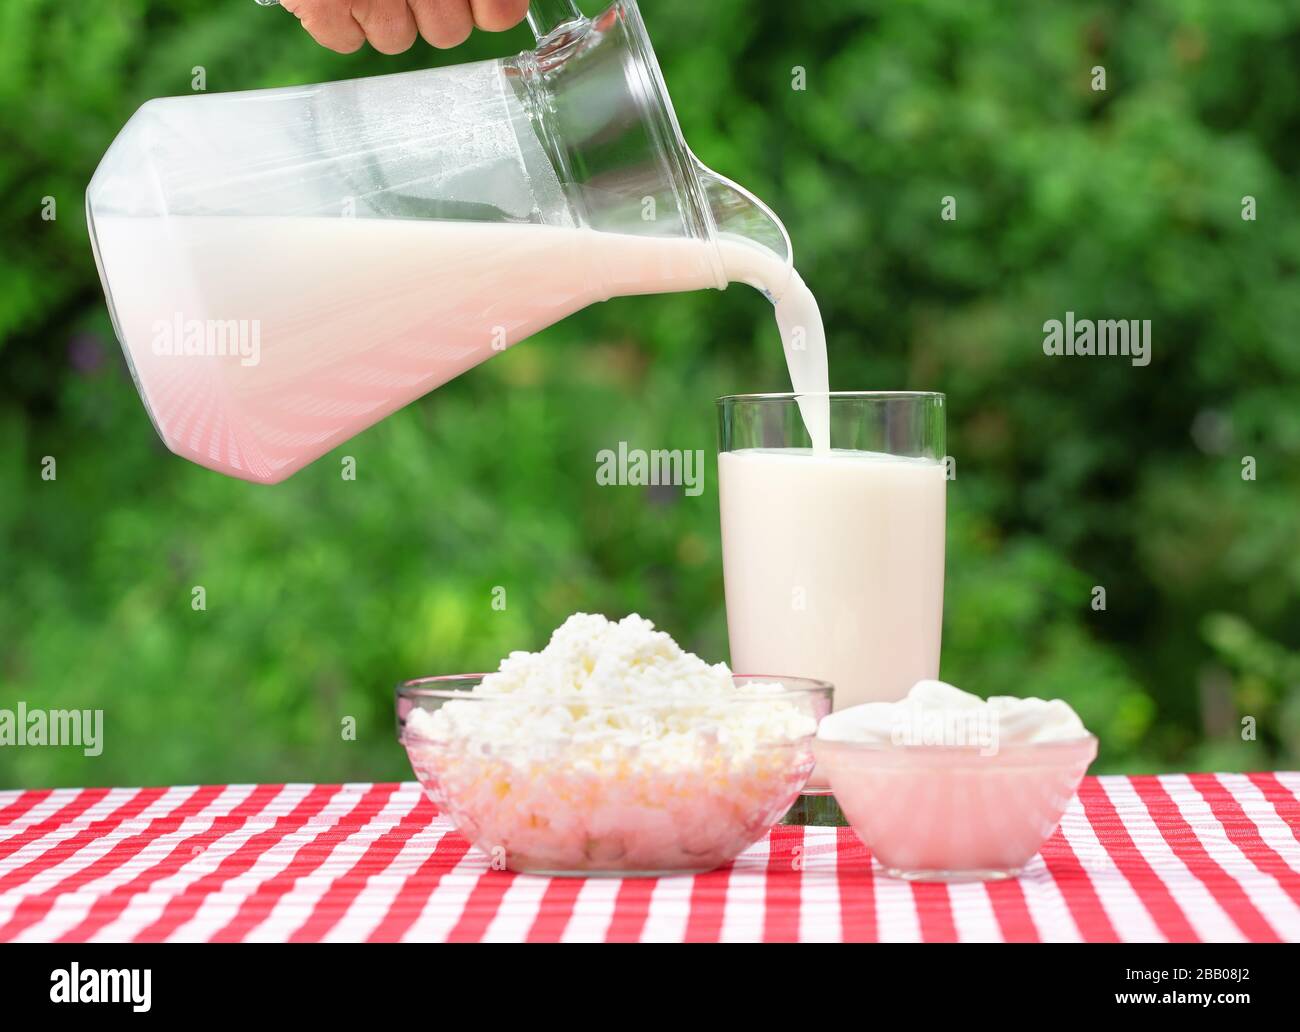 Du lait qui coule d'un pichet dans un verre. Sur la table couverte d'une nappe à damier rouge sont des produits laitiers. Fond vert naturel Banque D'Images